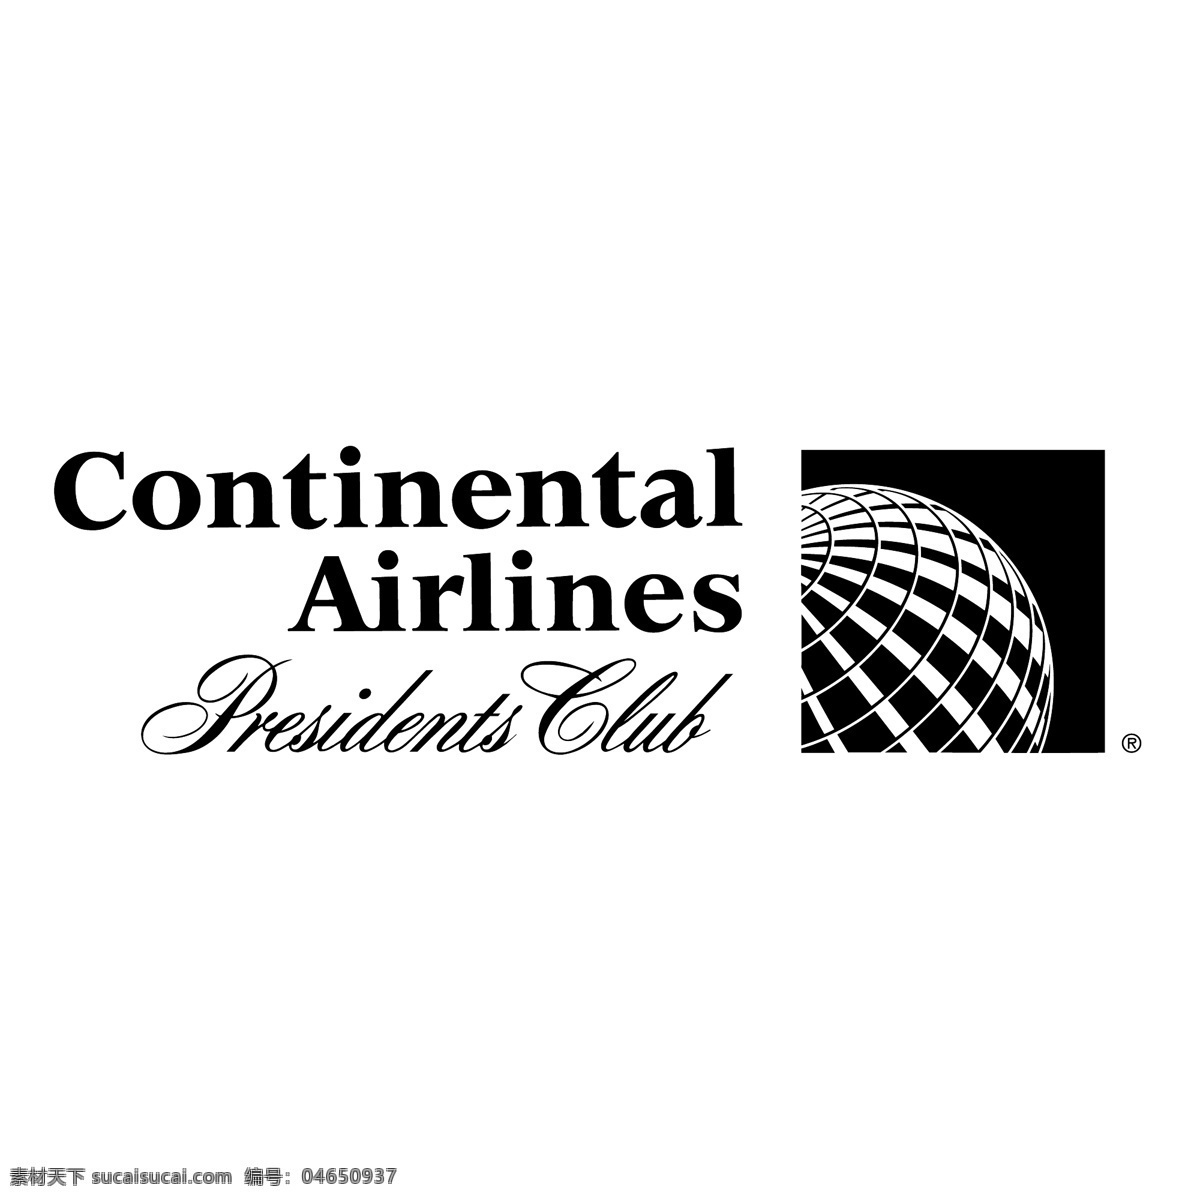 大陆航空公司 总裁 俱乐部 航空公司 大陆 总裁俱乐部 向量 美国 标志 矢量 总统 航空 矢量图 建筑家居